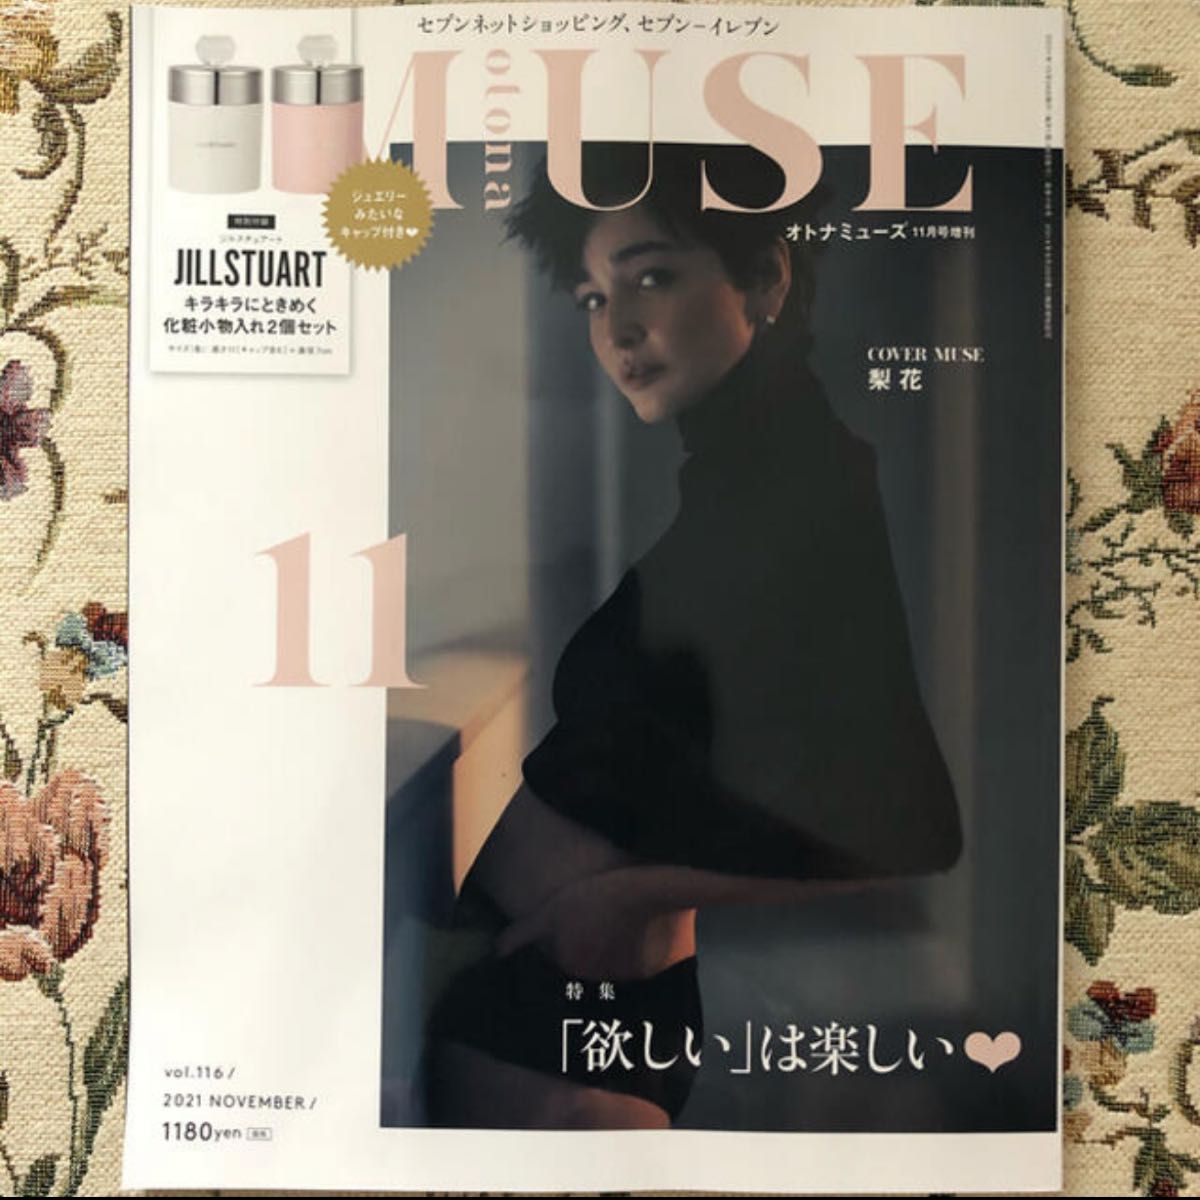 「otona MUSE (オトナ ミューズ) 2021年 11月号」増刊雑誌のみ